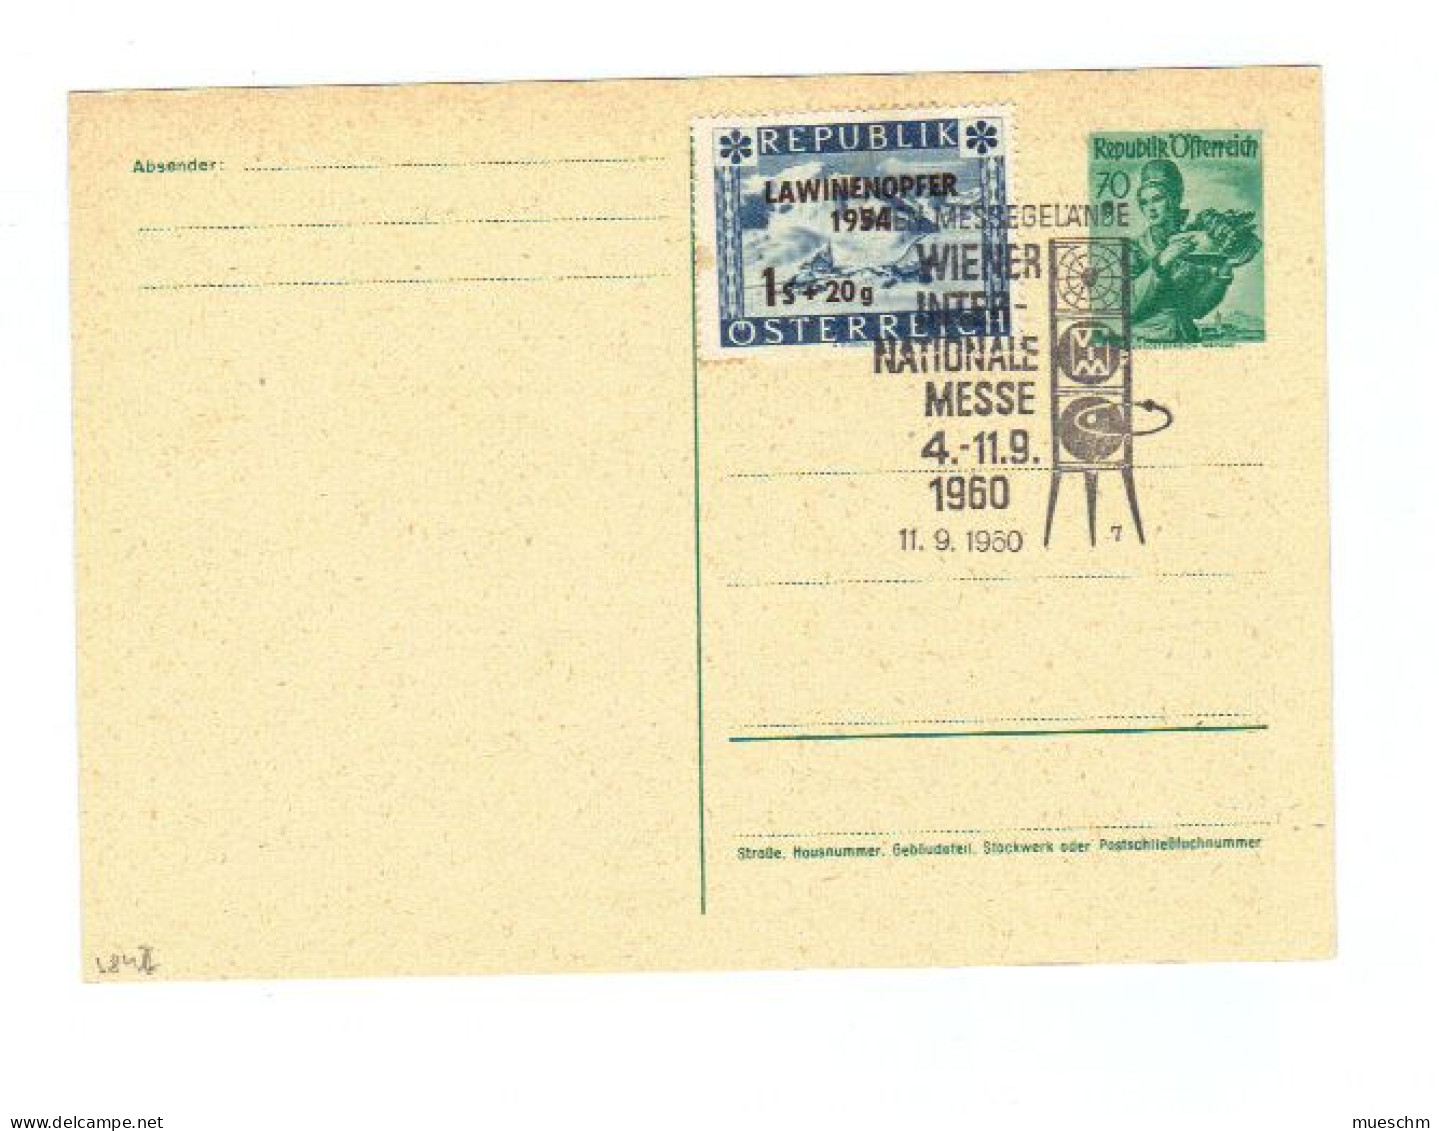 Österreich, 1960, Ungebr.Postkarte Mit Eingedr. 70Gr./Trachten Und Zusatz 1S+20g/Lawinen Unglück1954 U. SStpl. (11794W) - Postkarten